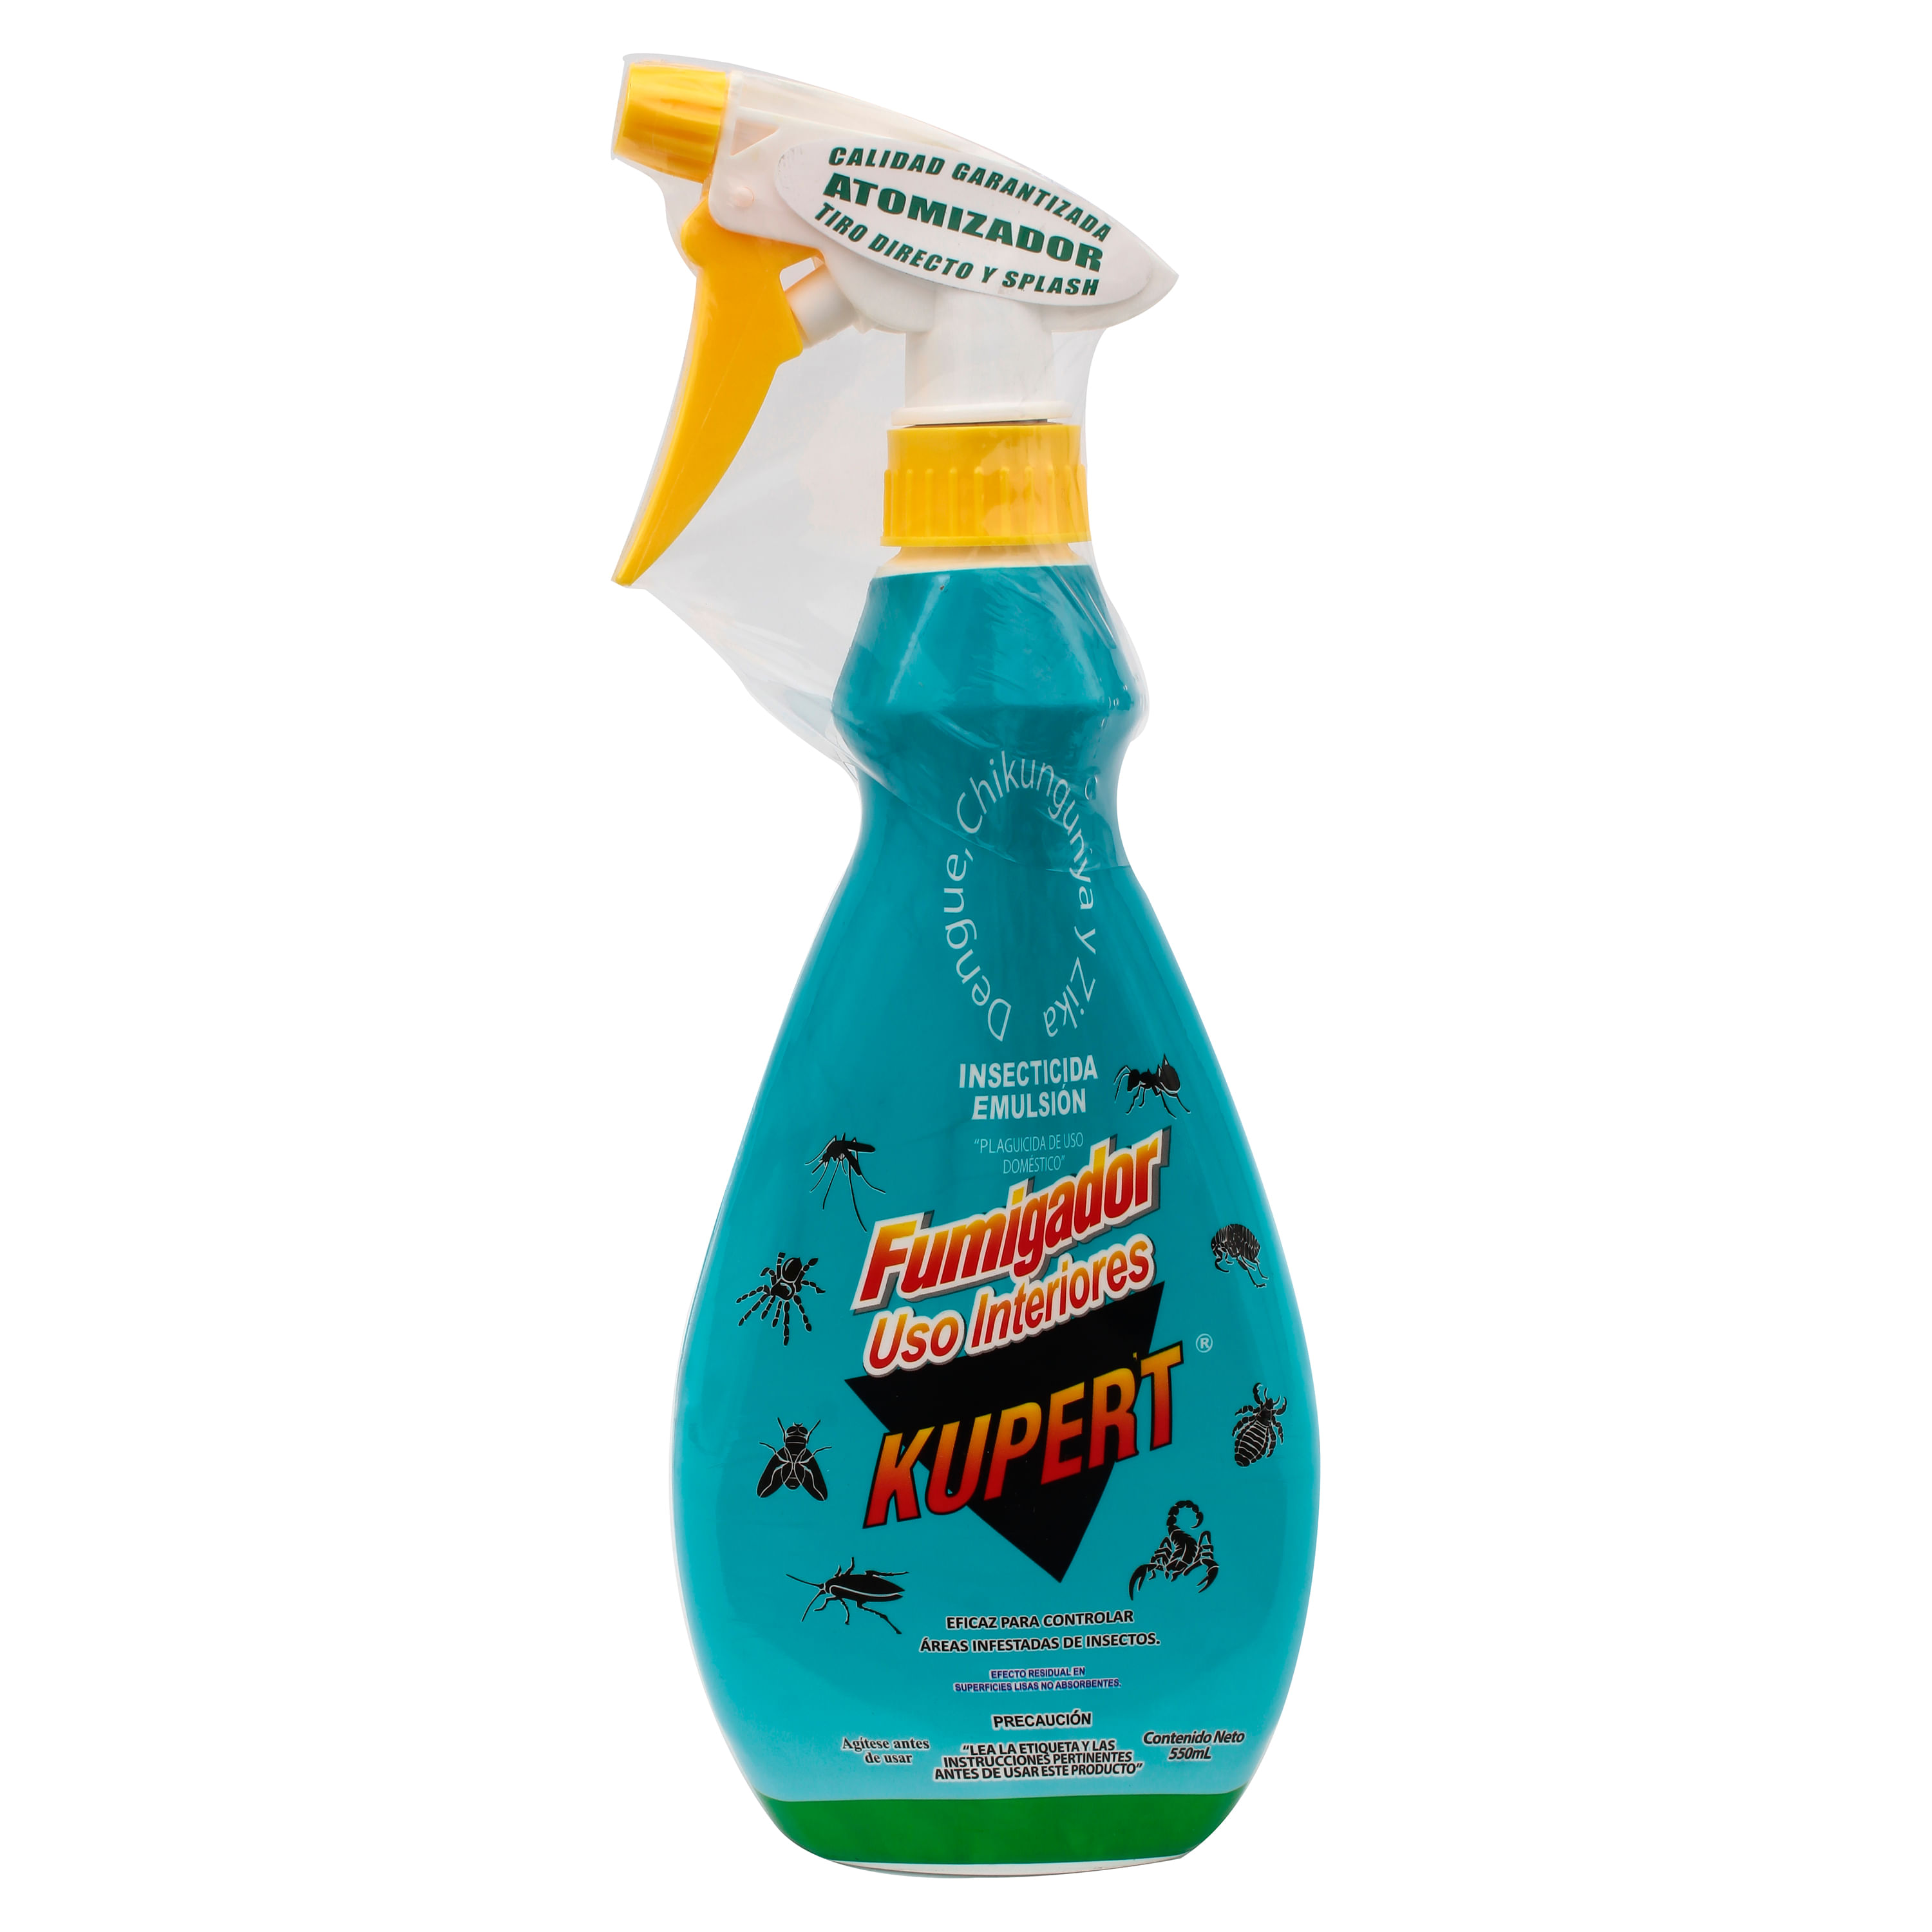 Insecticida-Kupert-Fumigador-1-30201